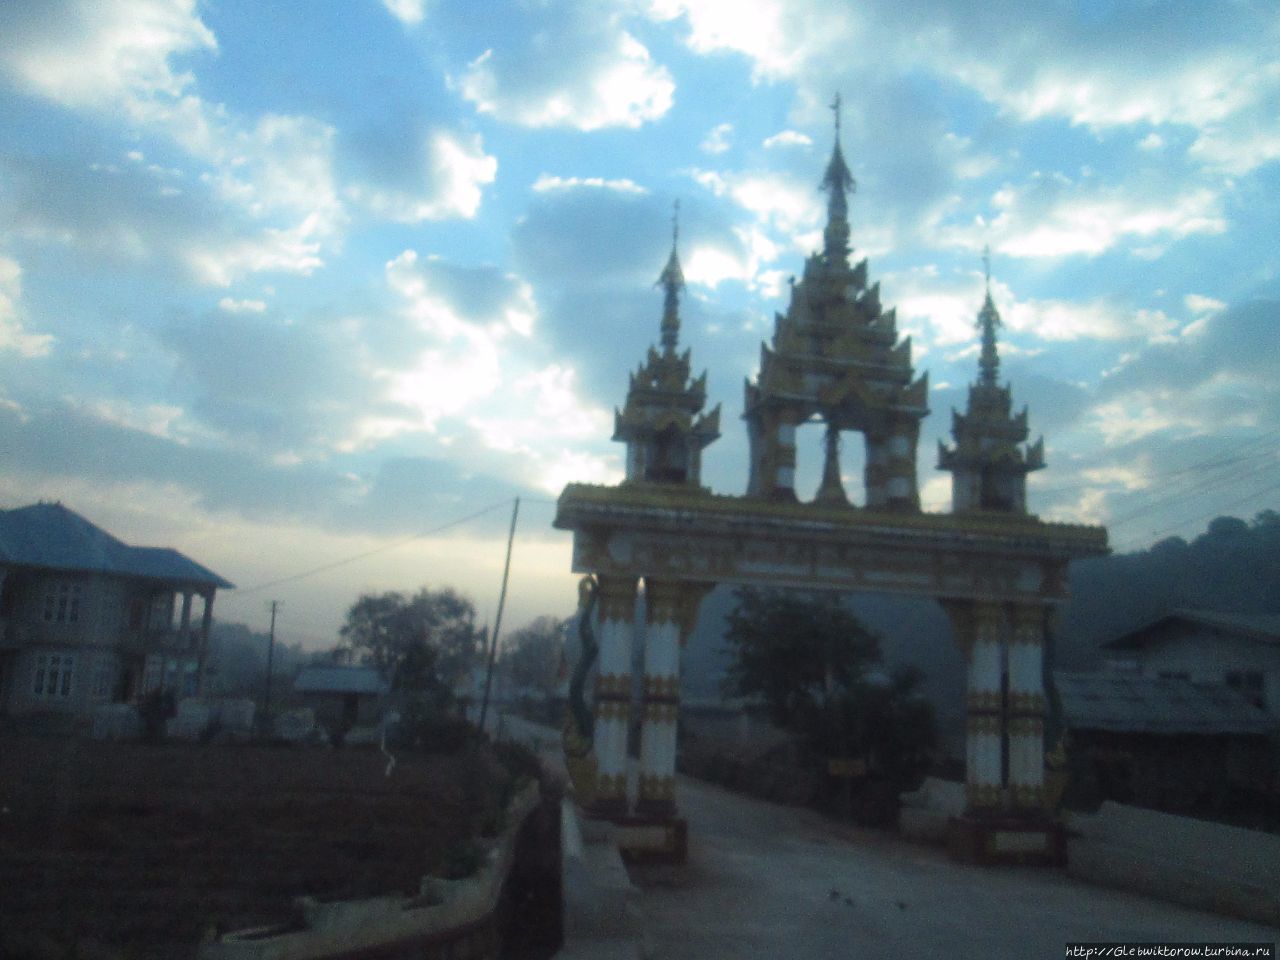 Поездка из штата Шан в штат Кая Пинлаунг, Мьянма